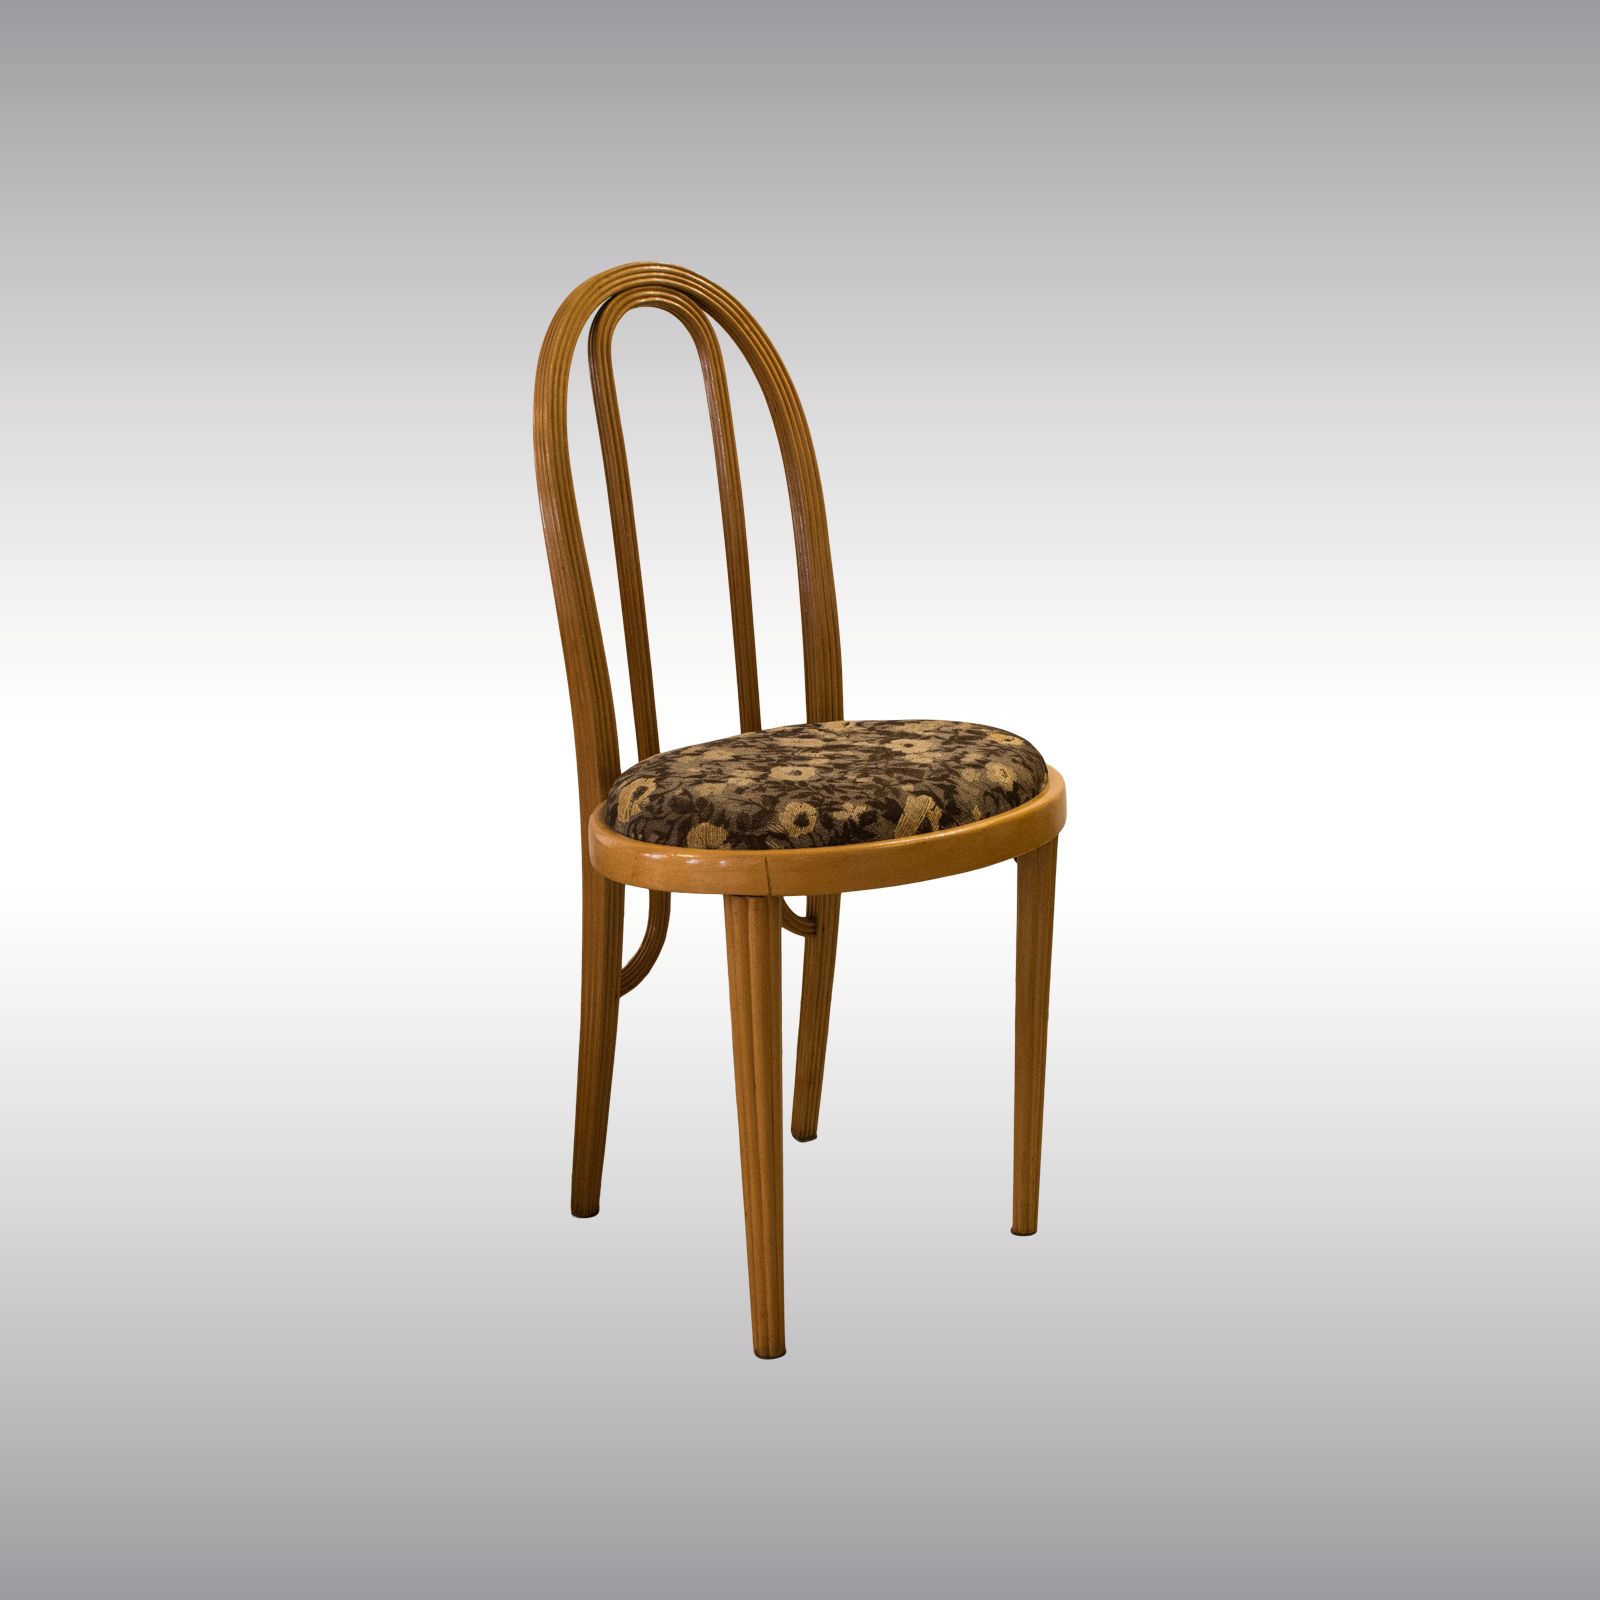 WOKA LAMPS VIENNA - OrderNr.: 80009|Rare Otto Prutscher and Thonet Chair 1908 - Design: Otto Prutscher